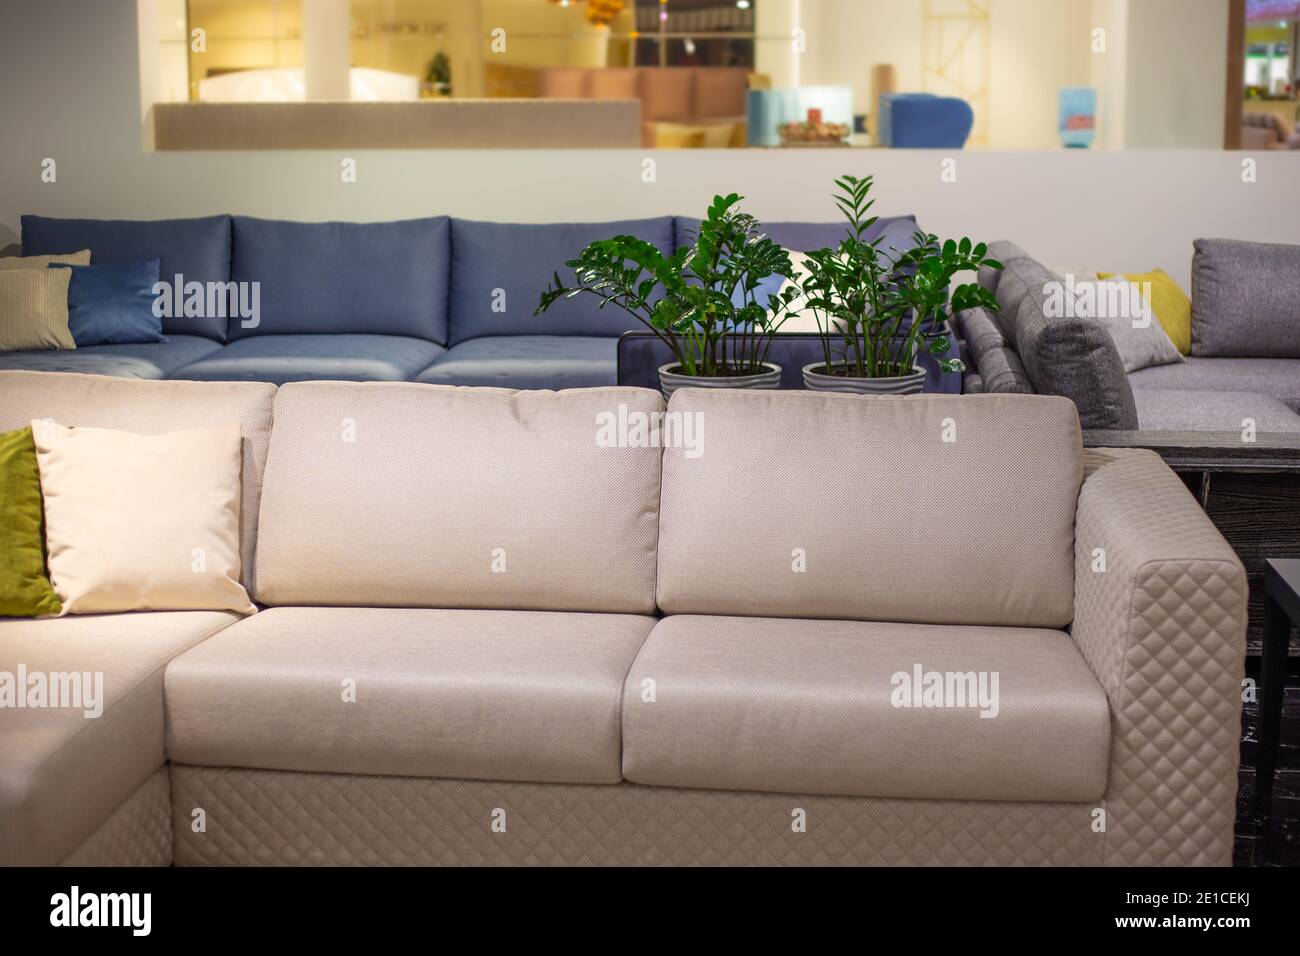 L'intérieur de la pièce. Grand canapé beige avec oreillers, fleurs en arrière-plan. Magasin de meubles. Banque D'Images